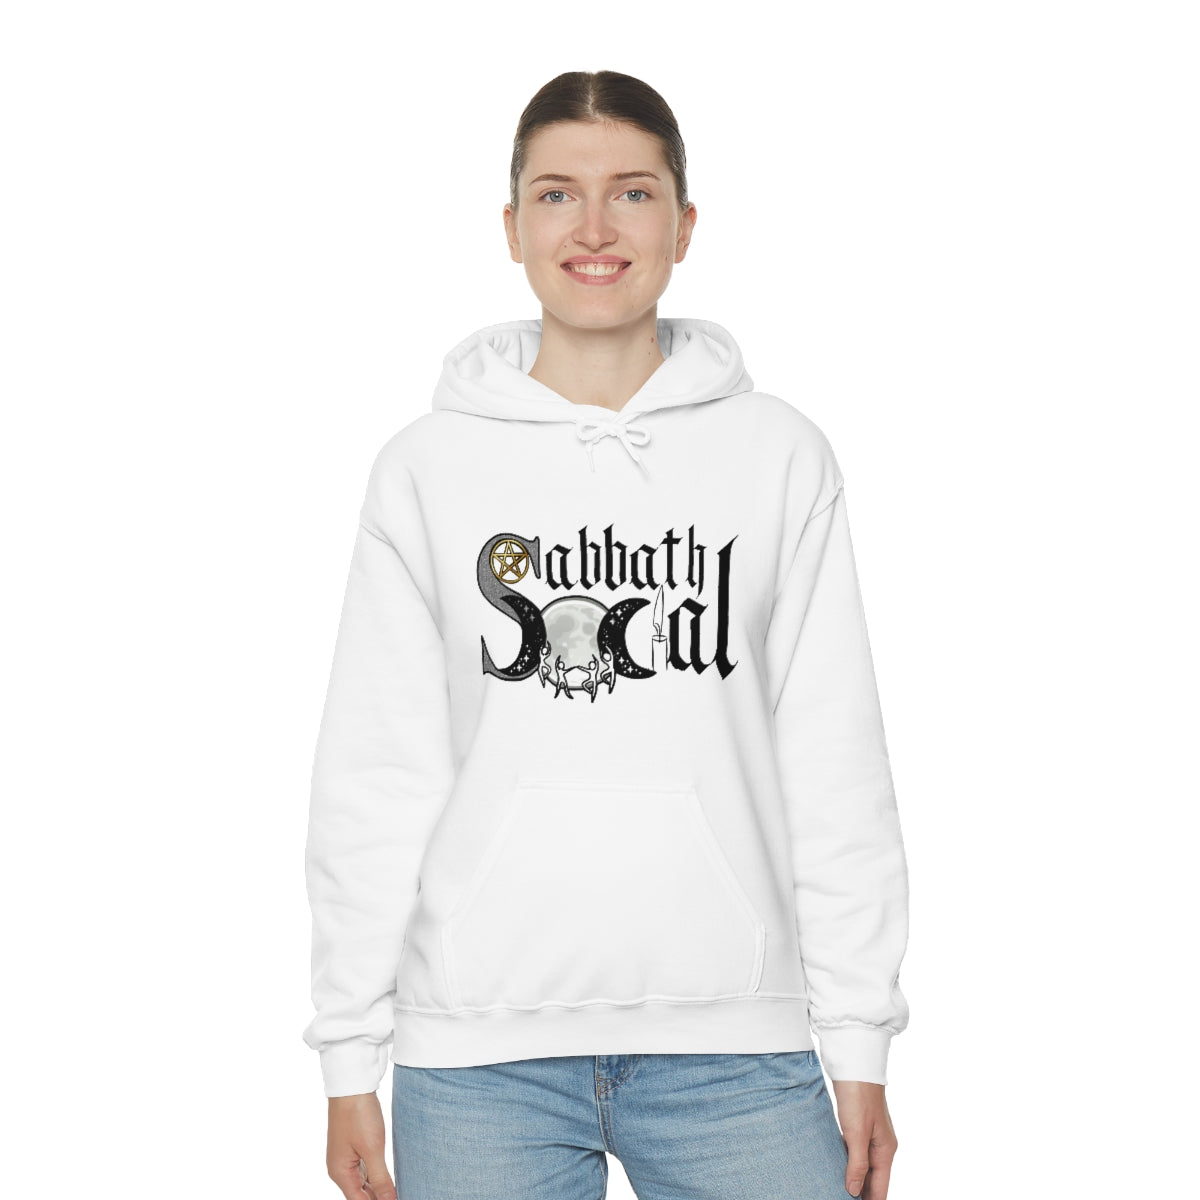 Unisex Sabbath Social Hooded Sweatshirt